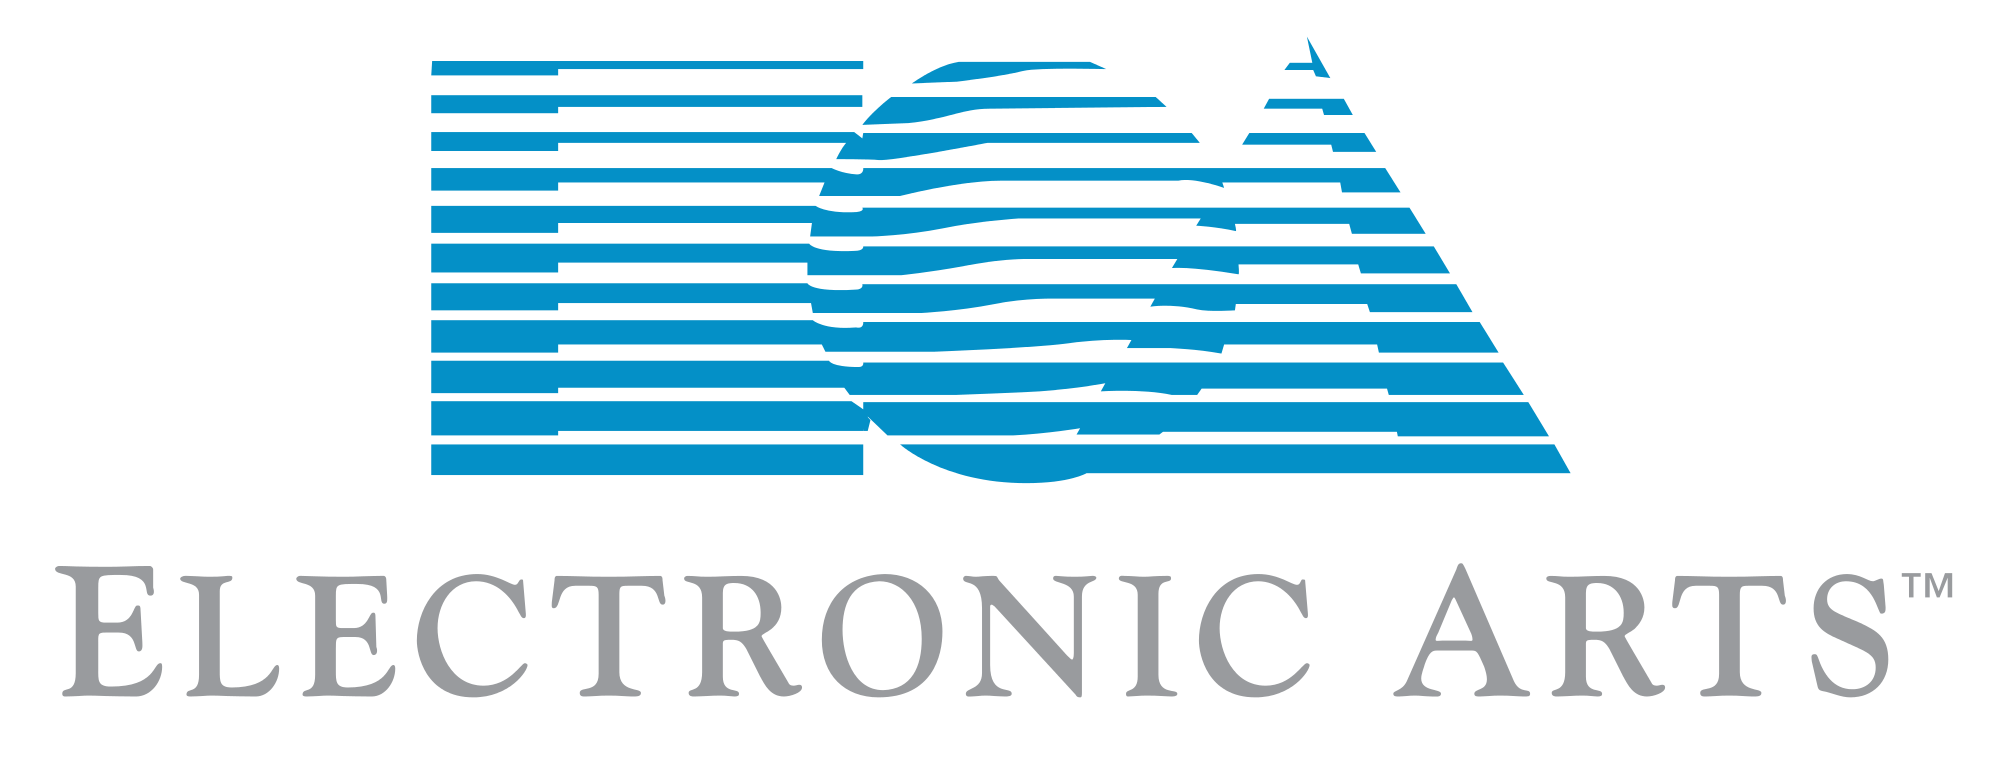 Electronic Arts Logo - Electronic Arts historical logo 80s.svg